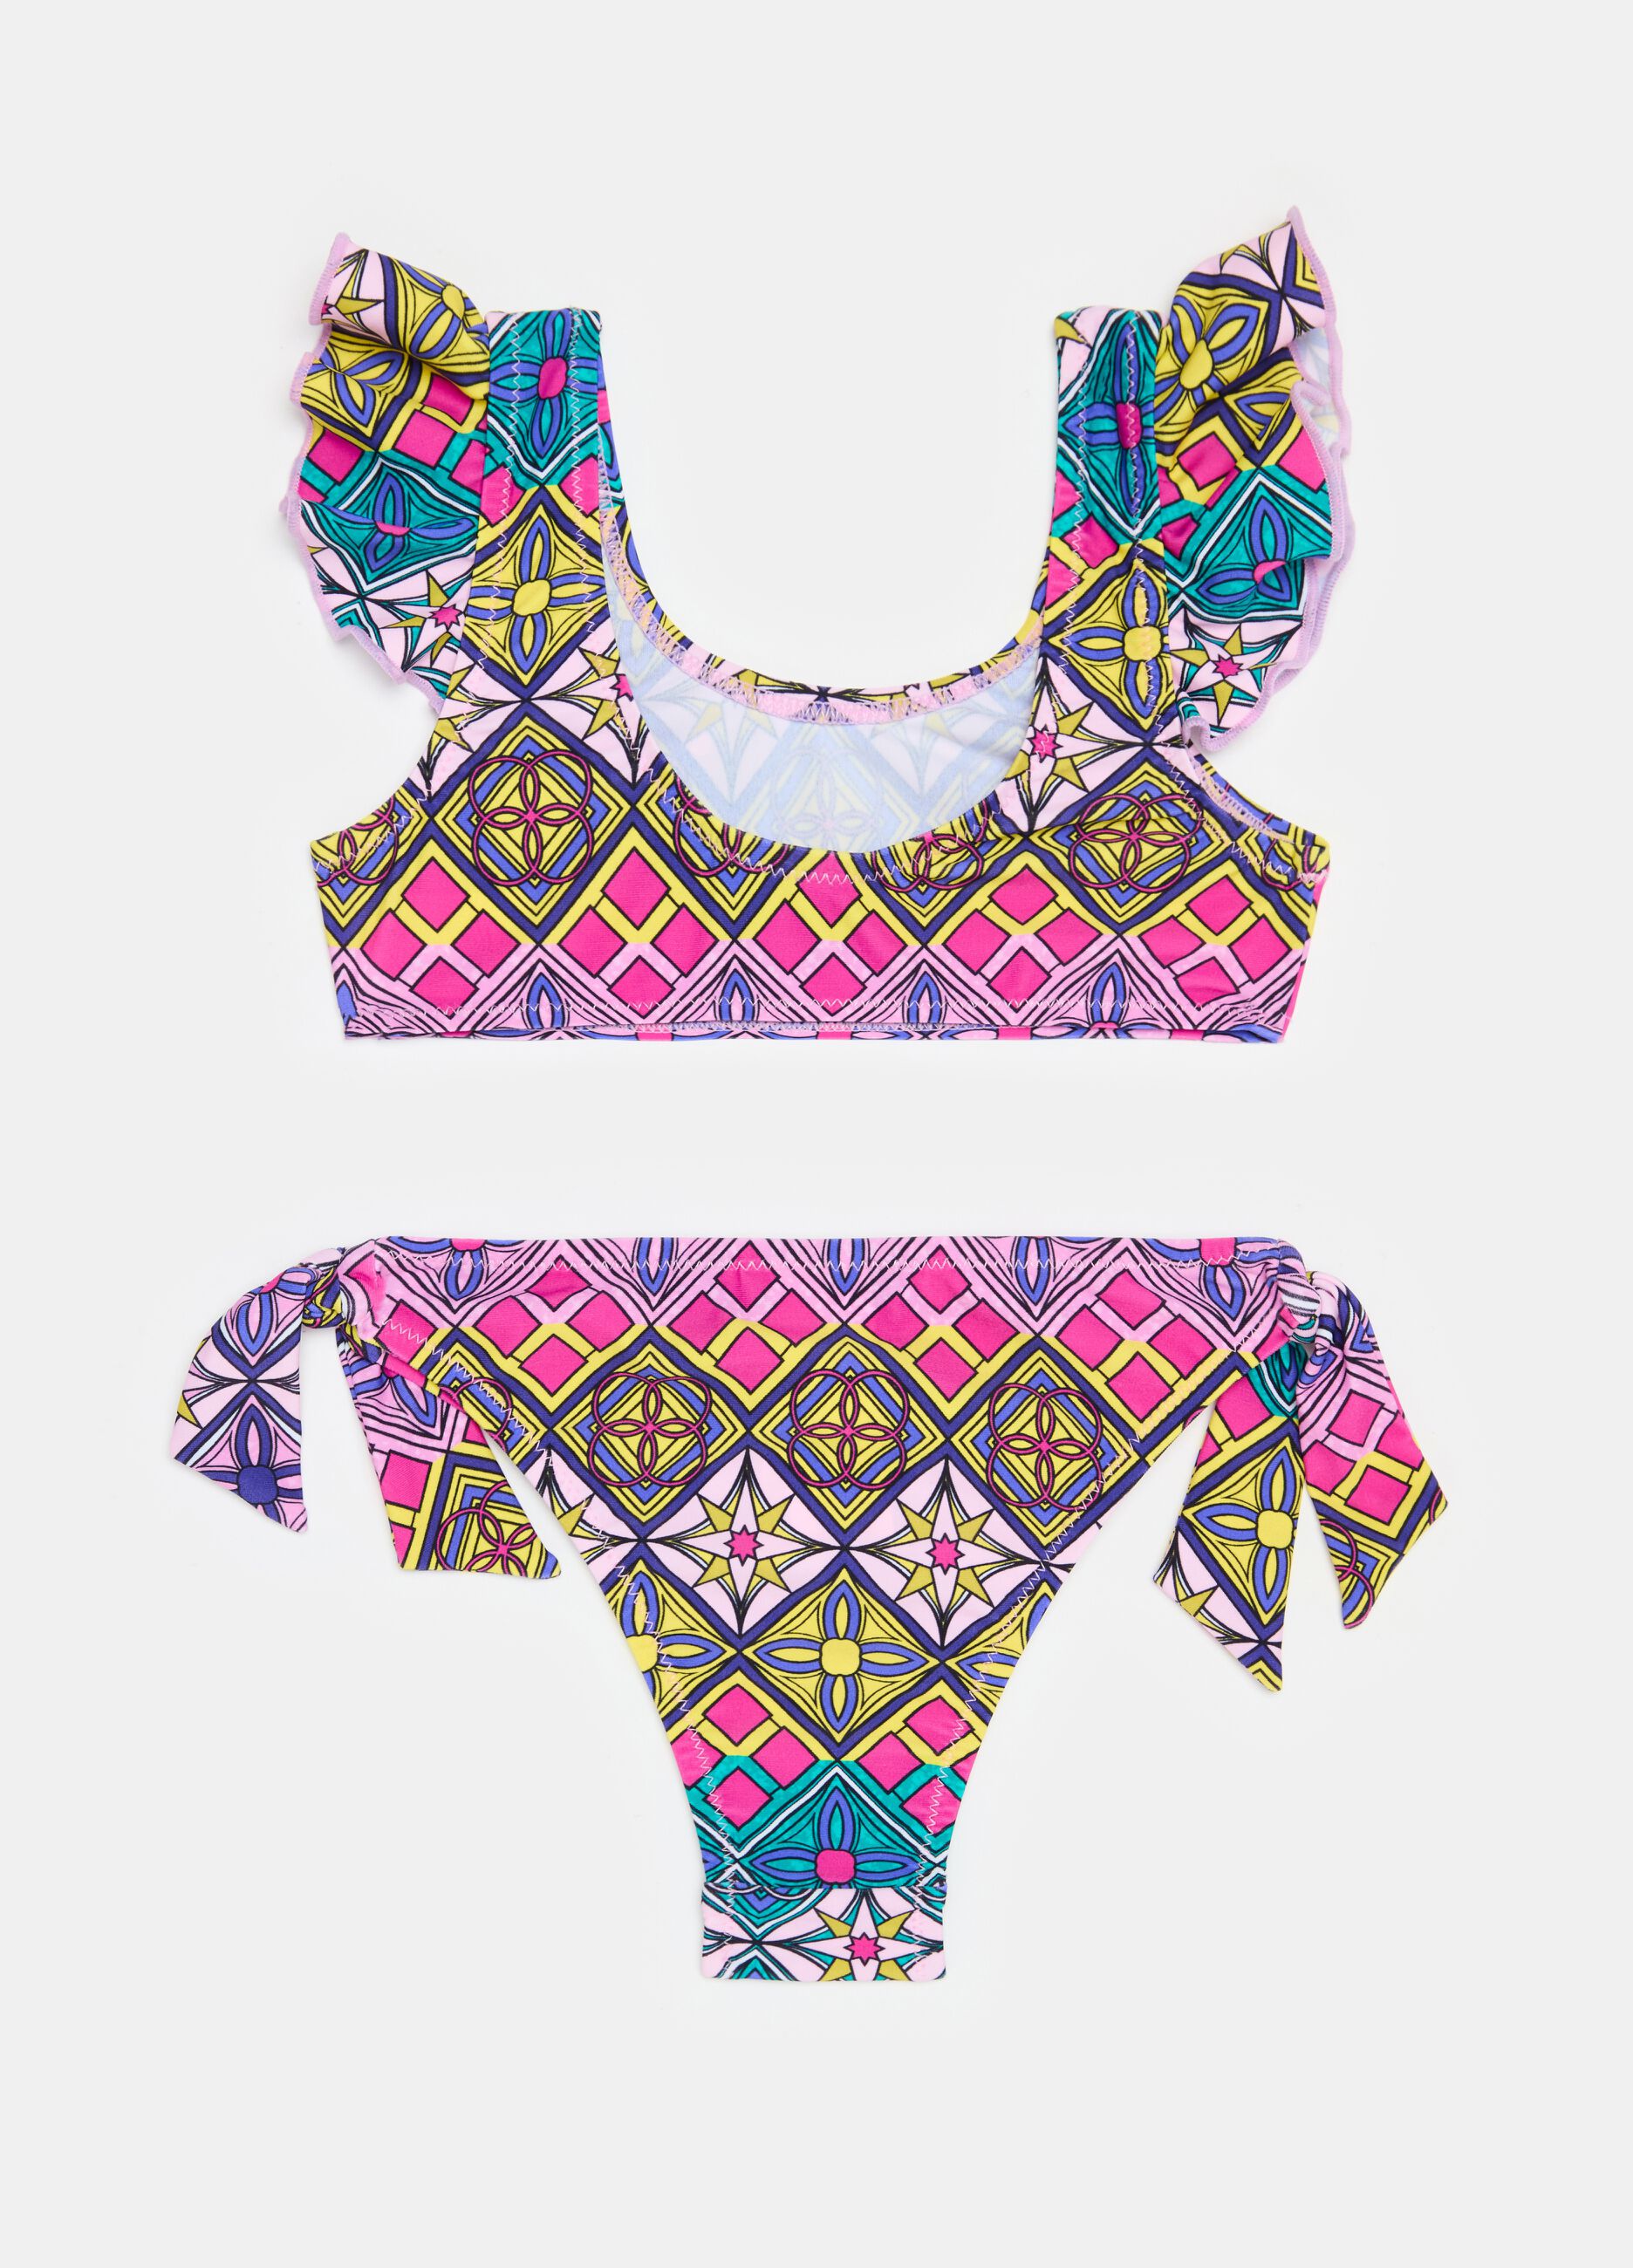 Bikini with ethnic pattern